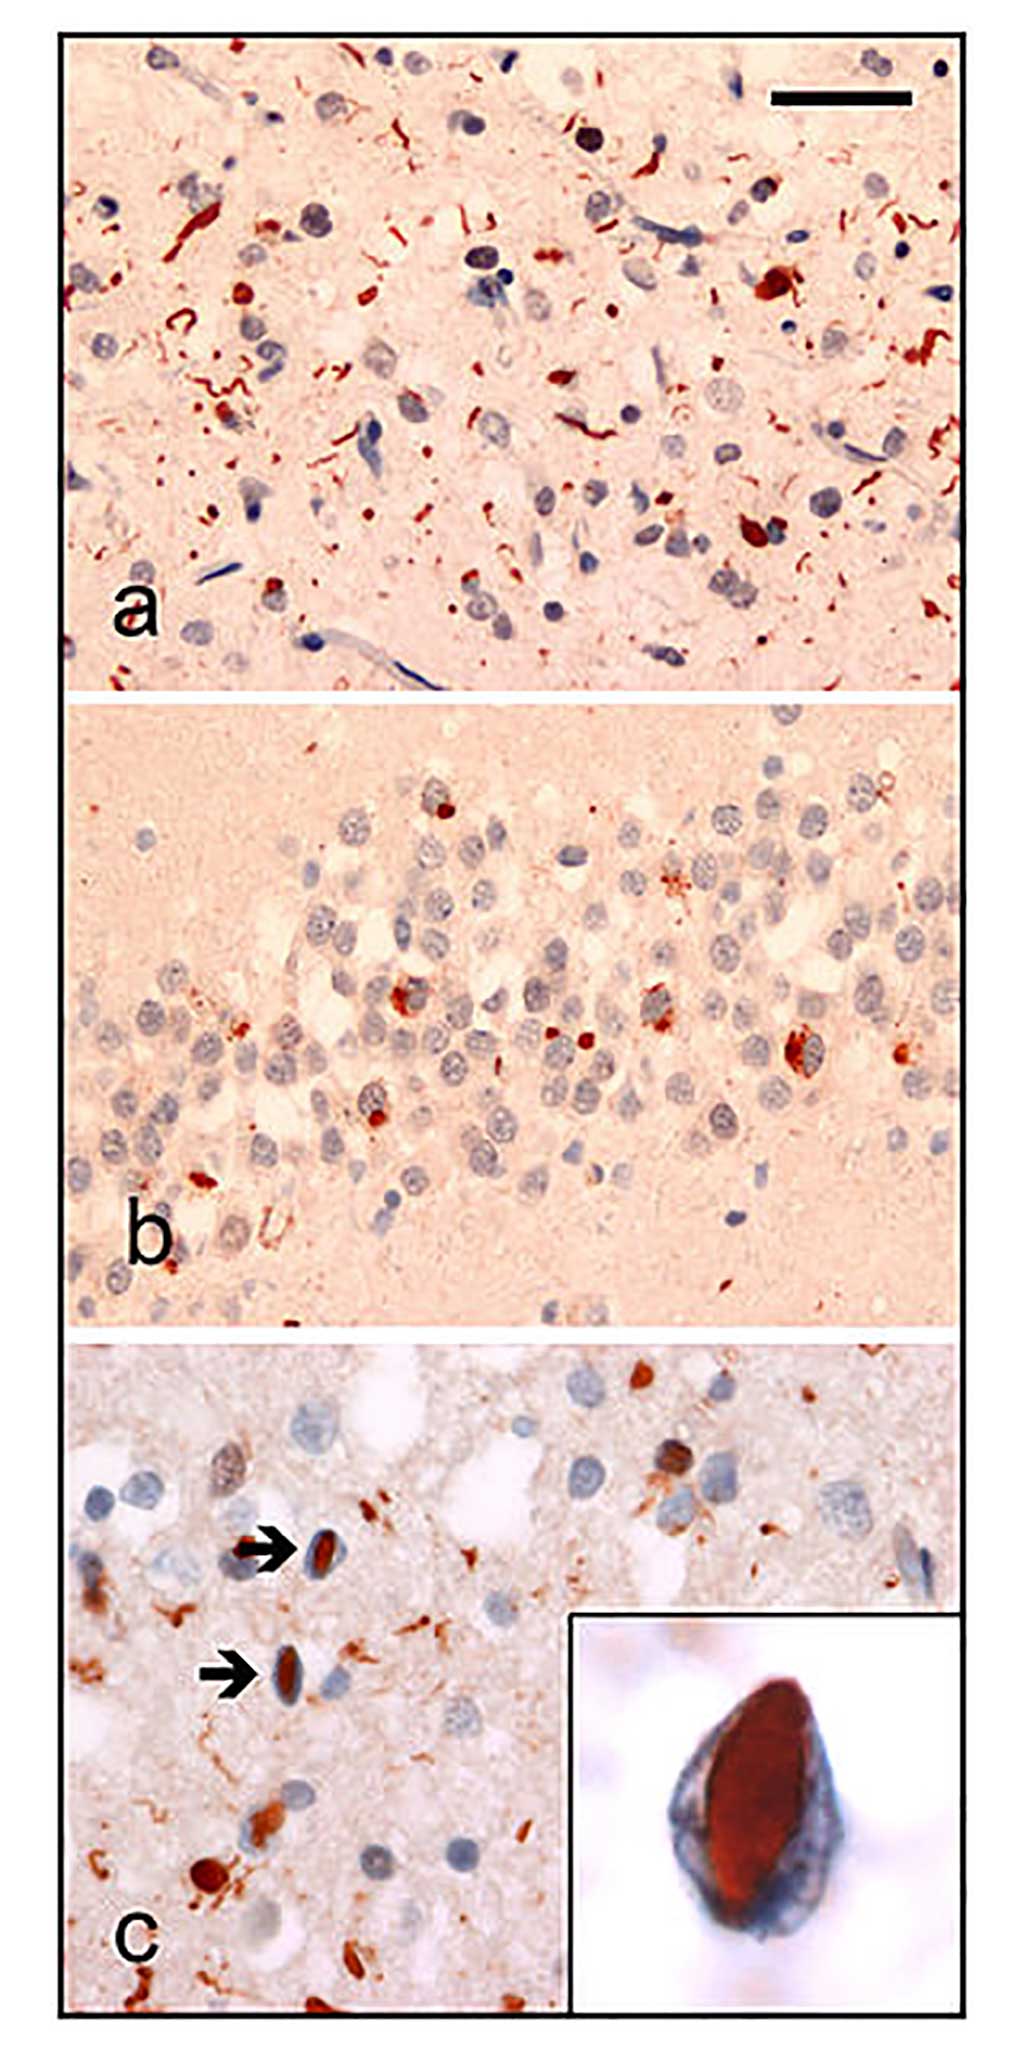 Imagen: Análisis neuropatológico del tejido cerebral de pacientes con FTLD. La inmunohistoquímica de ubiquitina en casos de FTLD familiar demuestra coloración de (a) neuritas e inclusiones citoplasmáticas neuronales en la neocorteza cerebral superficial, (b) inclusiones citoplásmicas neuronales en células granulares dentadas del hipocampo y (c) inclusiones intranucleares neuronales en la neocorteza cerebral (flechas) (Fotografía cortesía de Wikimedia Commons)